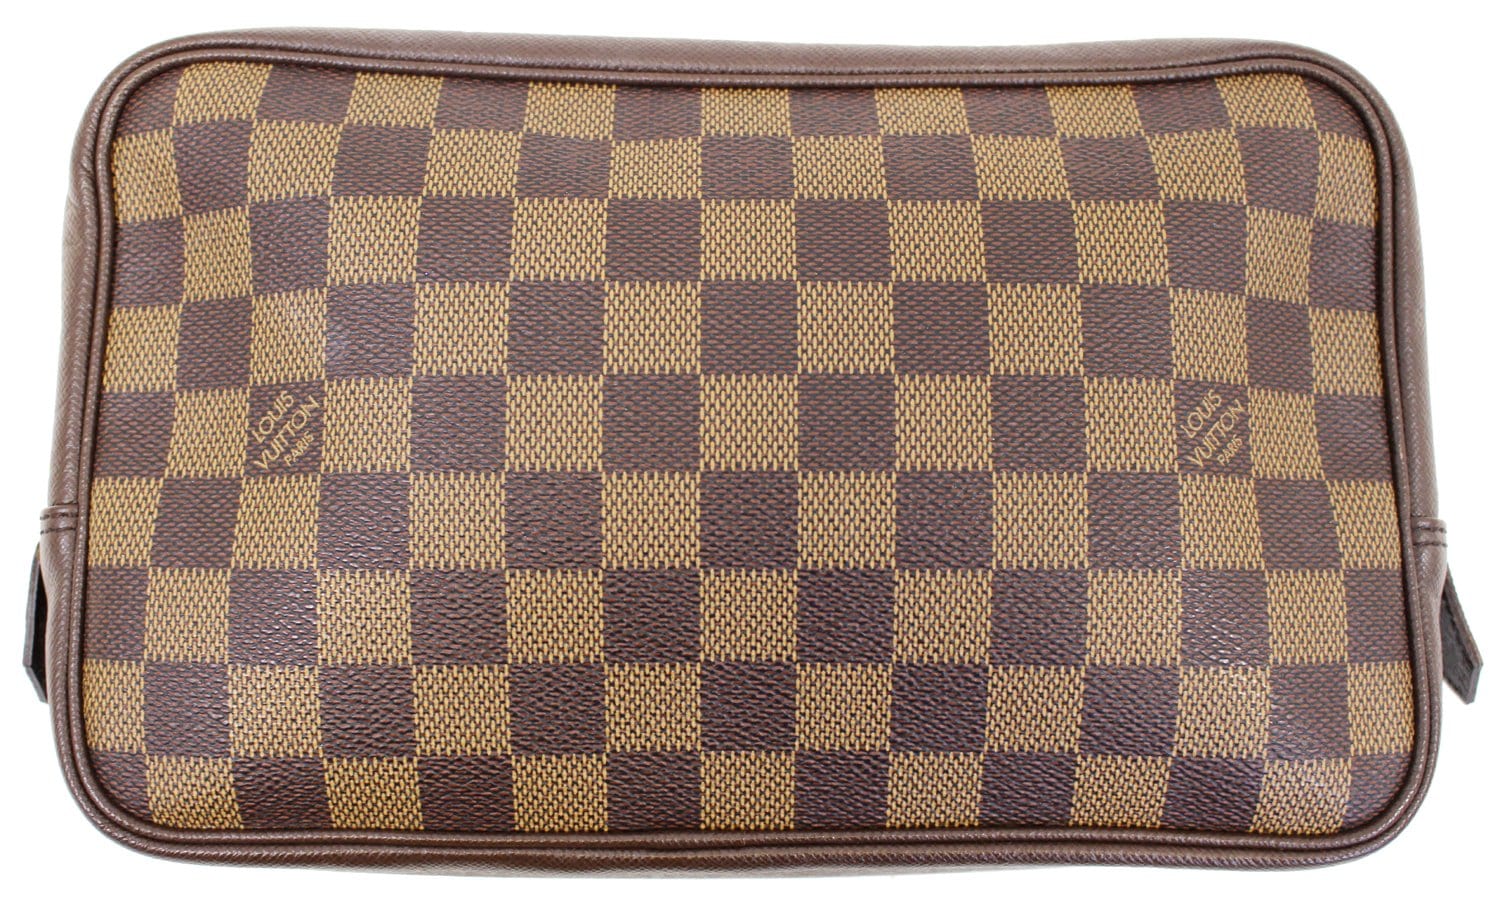 Louis Vuitton Damier Ebene Trousse Makeup Bag - Brown Handle Bags